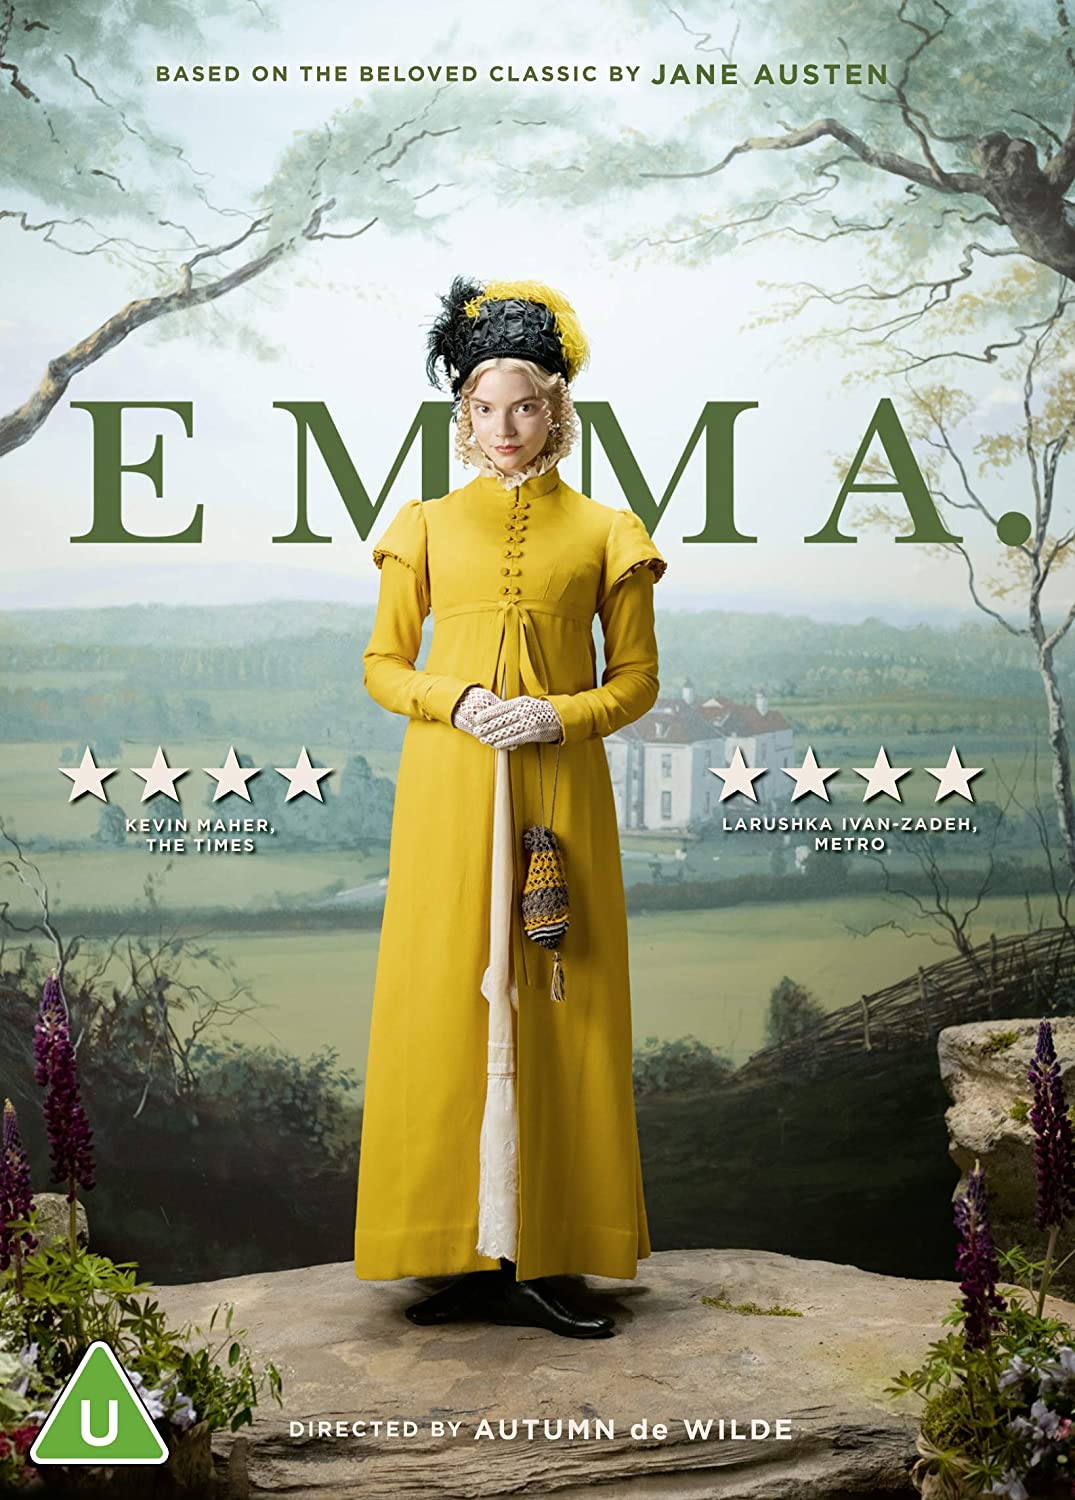 Emma Woodhouse: trasposizione letteraria di Jane Austen